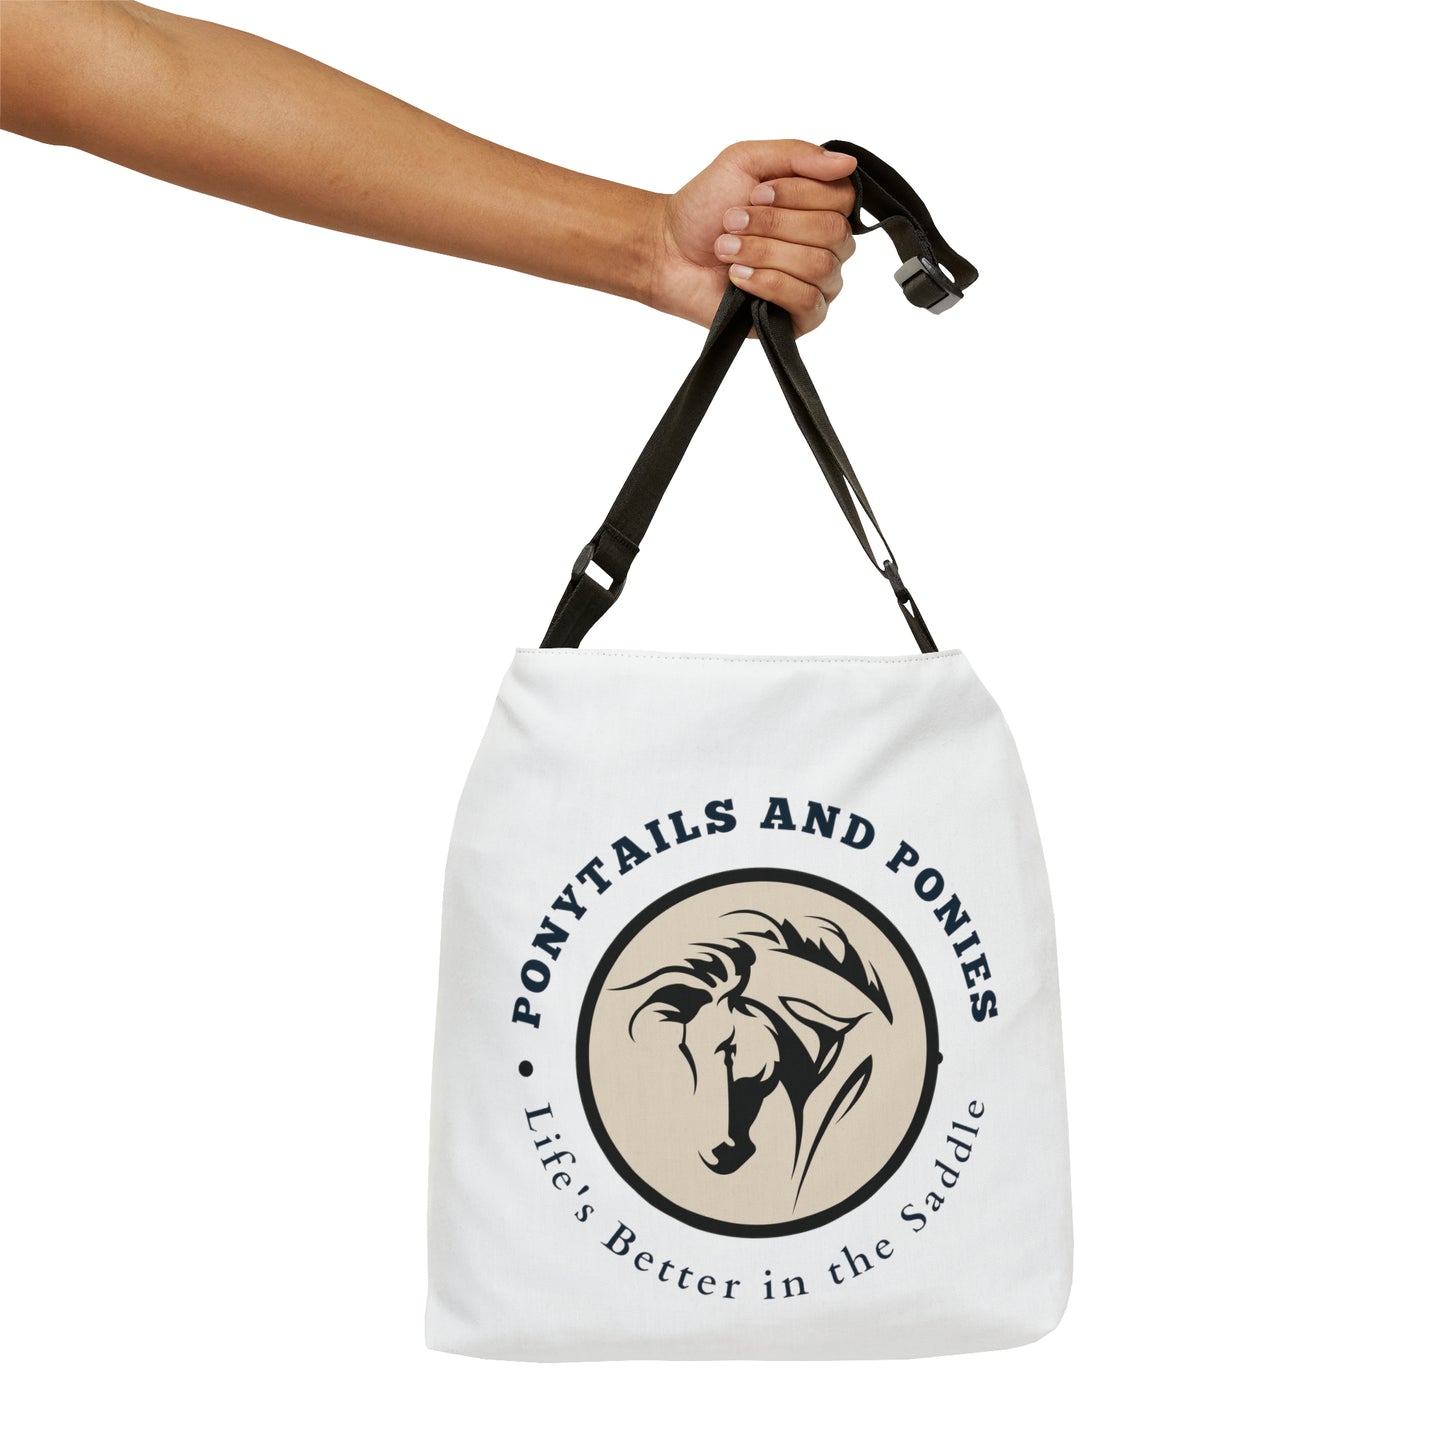 Ponytails & Ponies Tote Bag